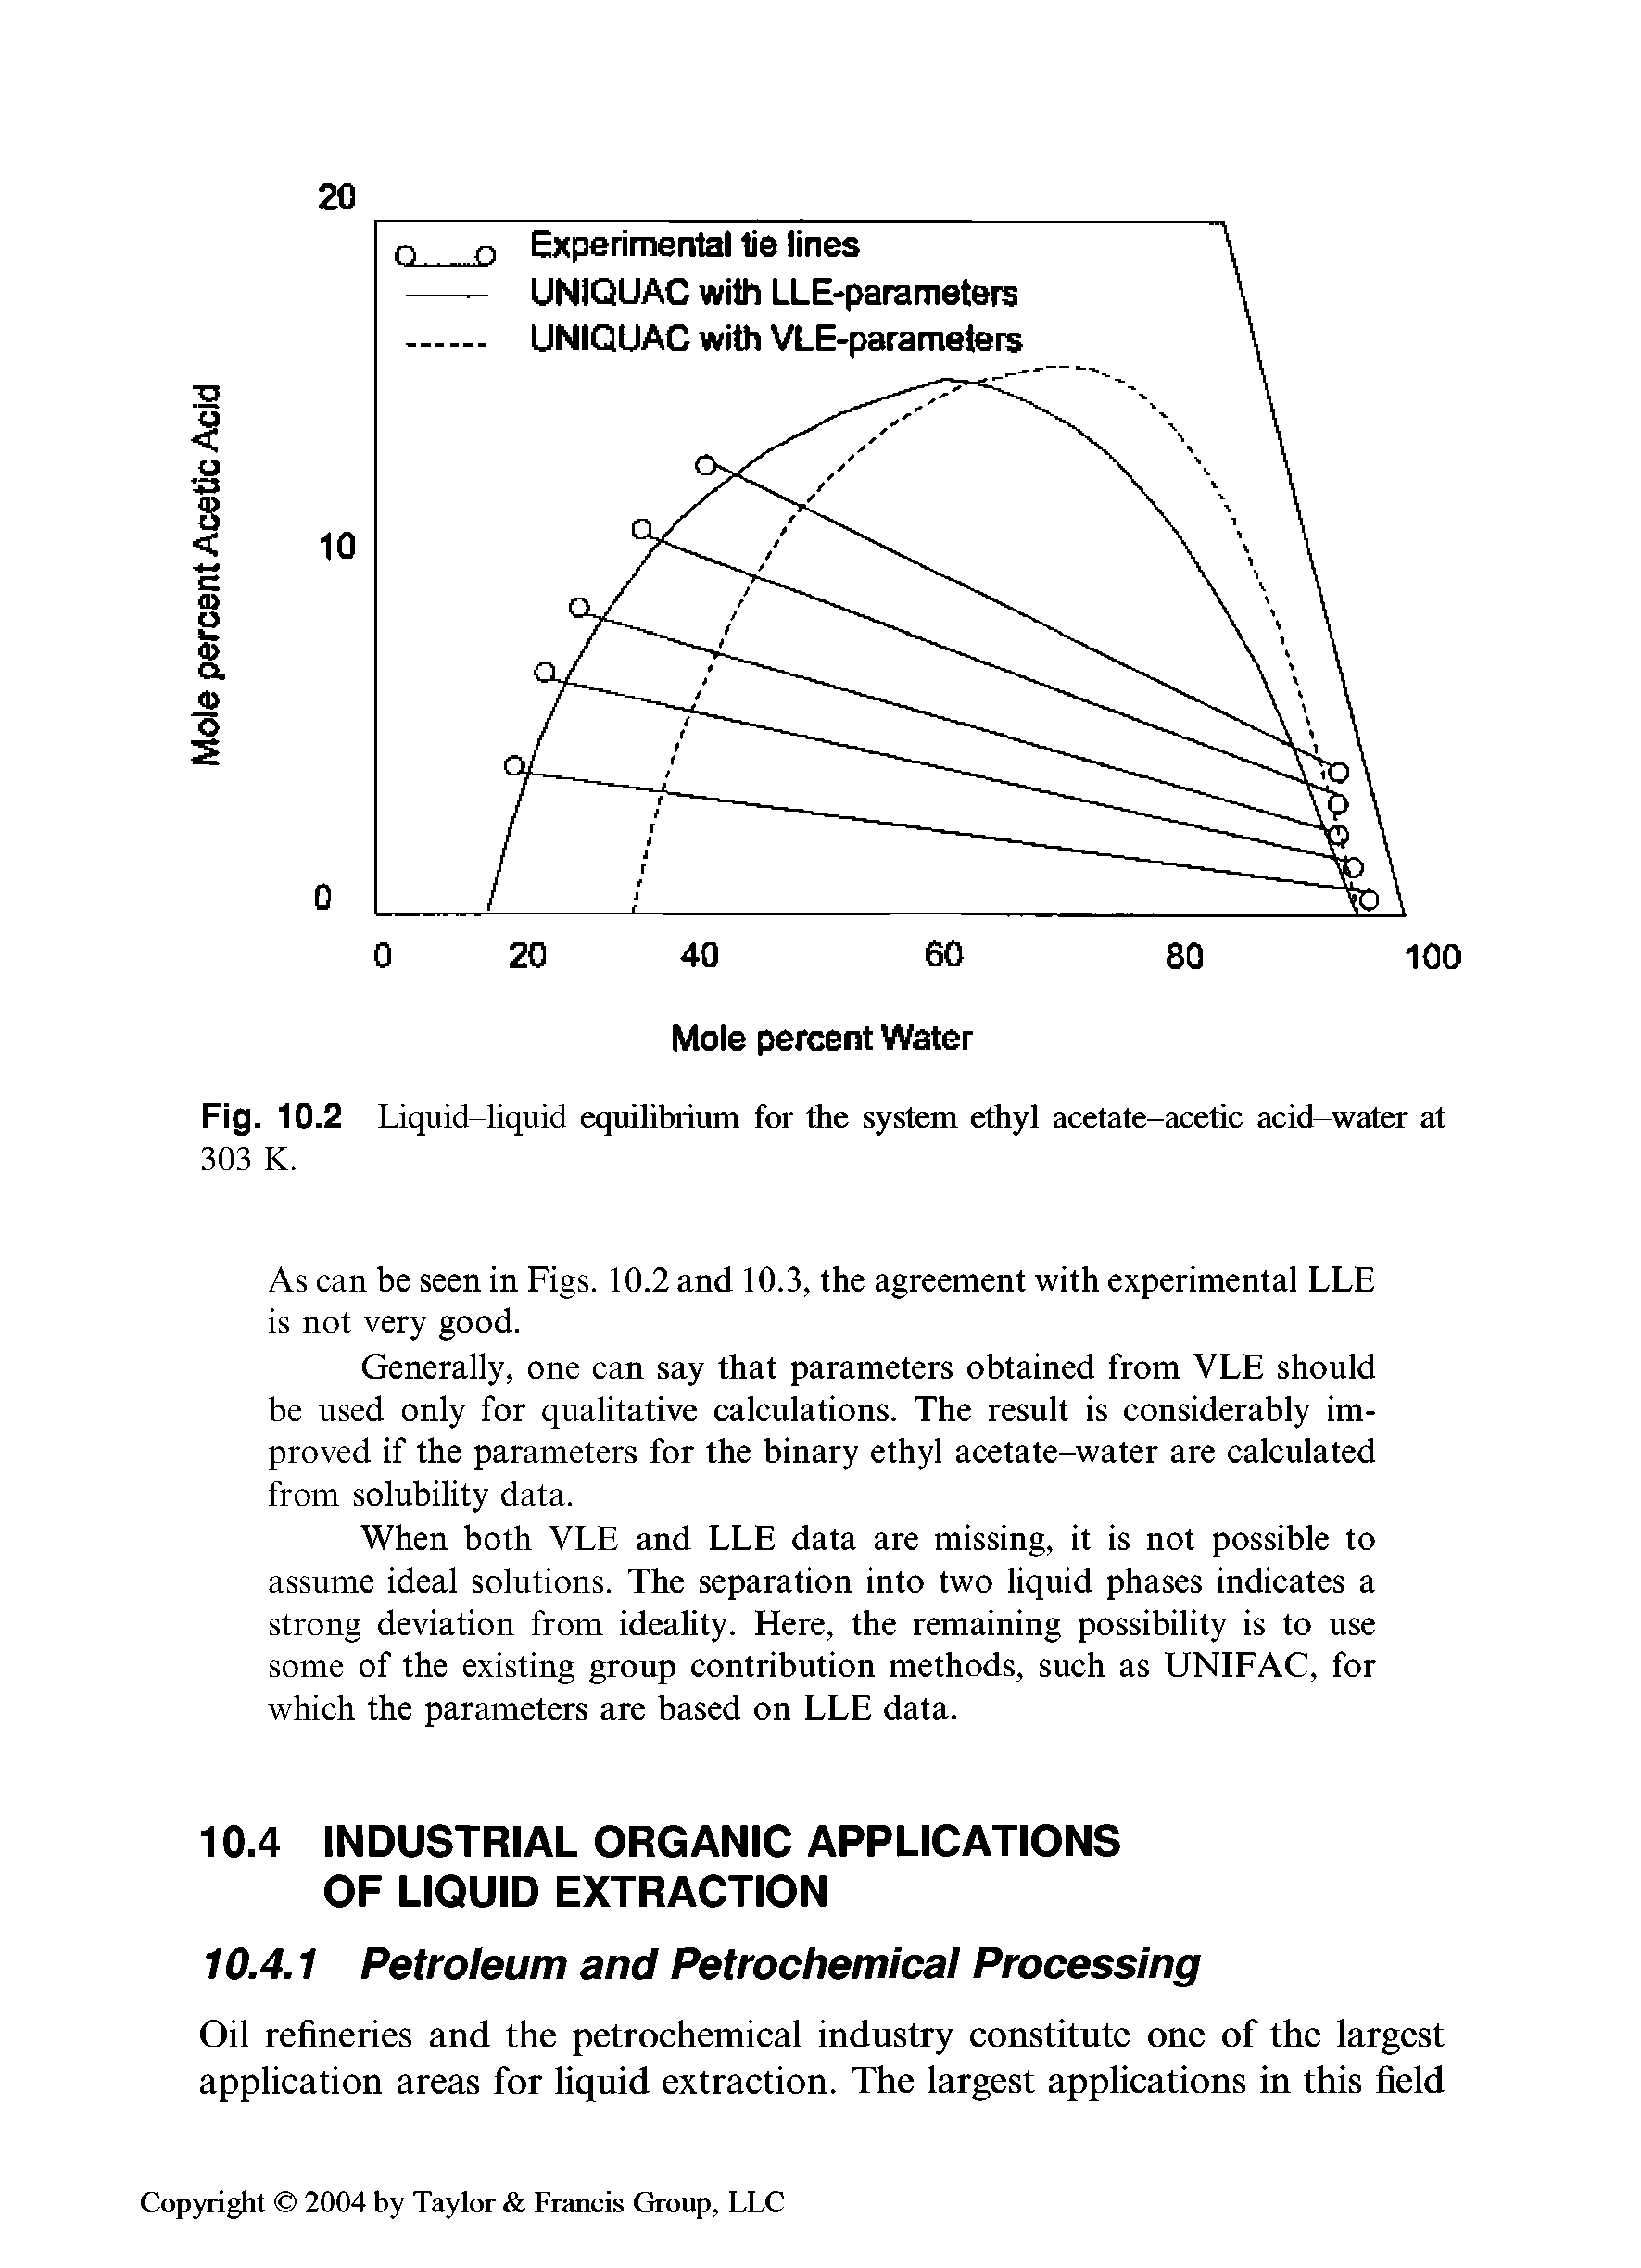 Fig. 10.2 Liquid-liquid equilibrium for the system ethyl acetate-acetic acid-water at 303 K.